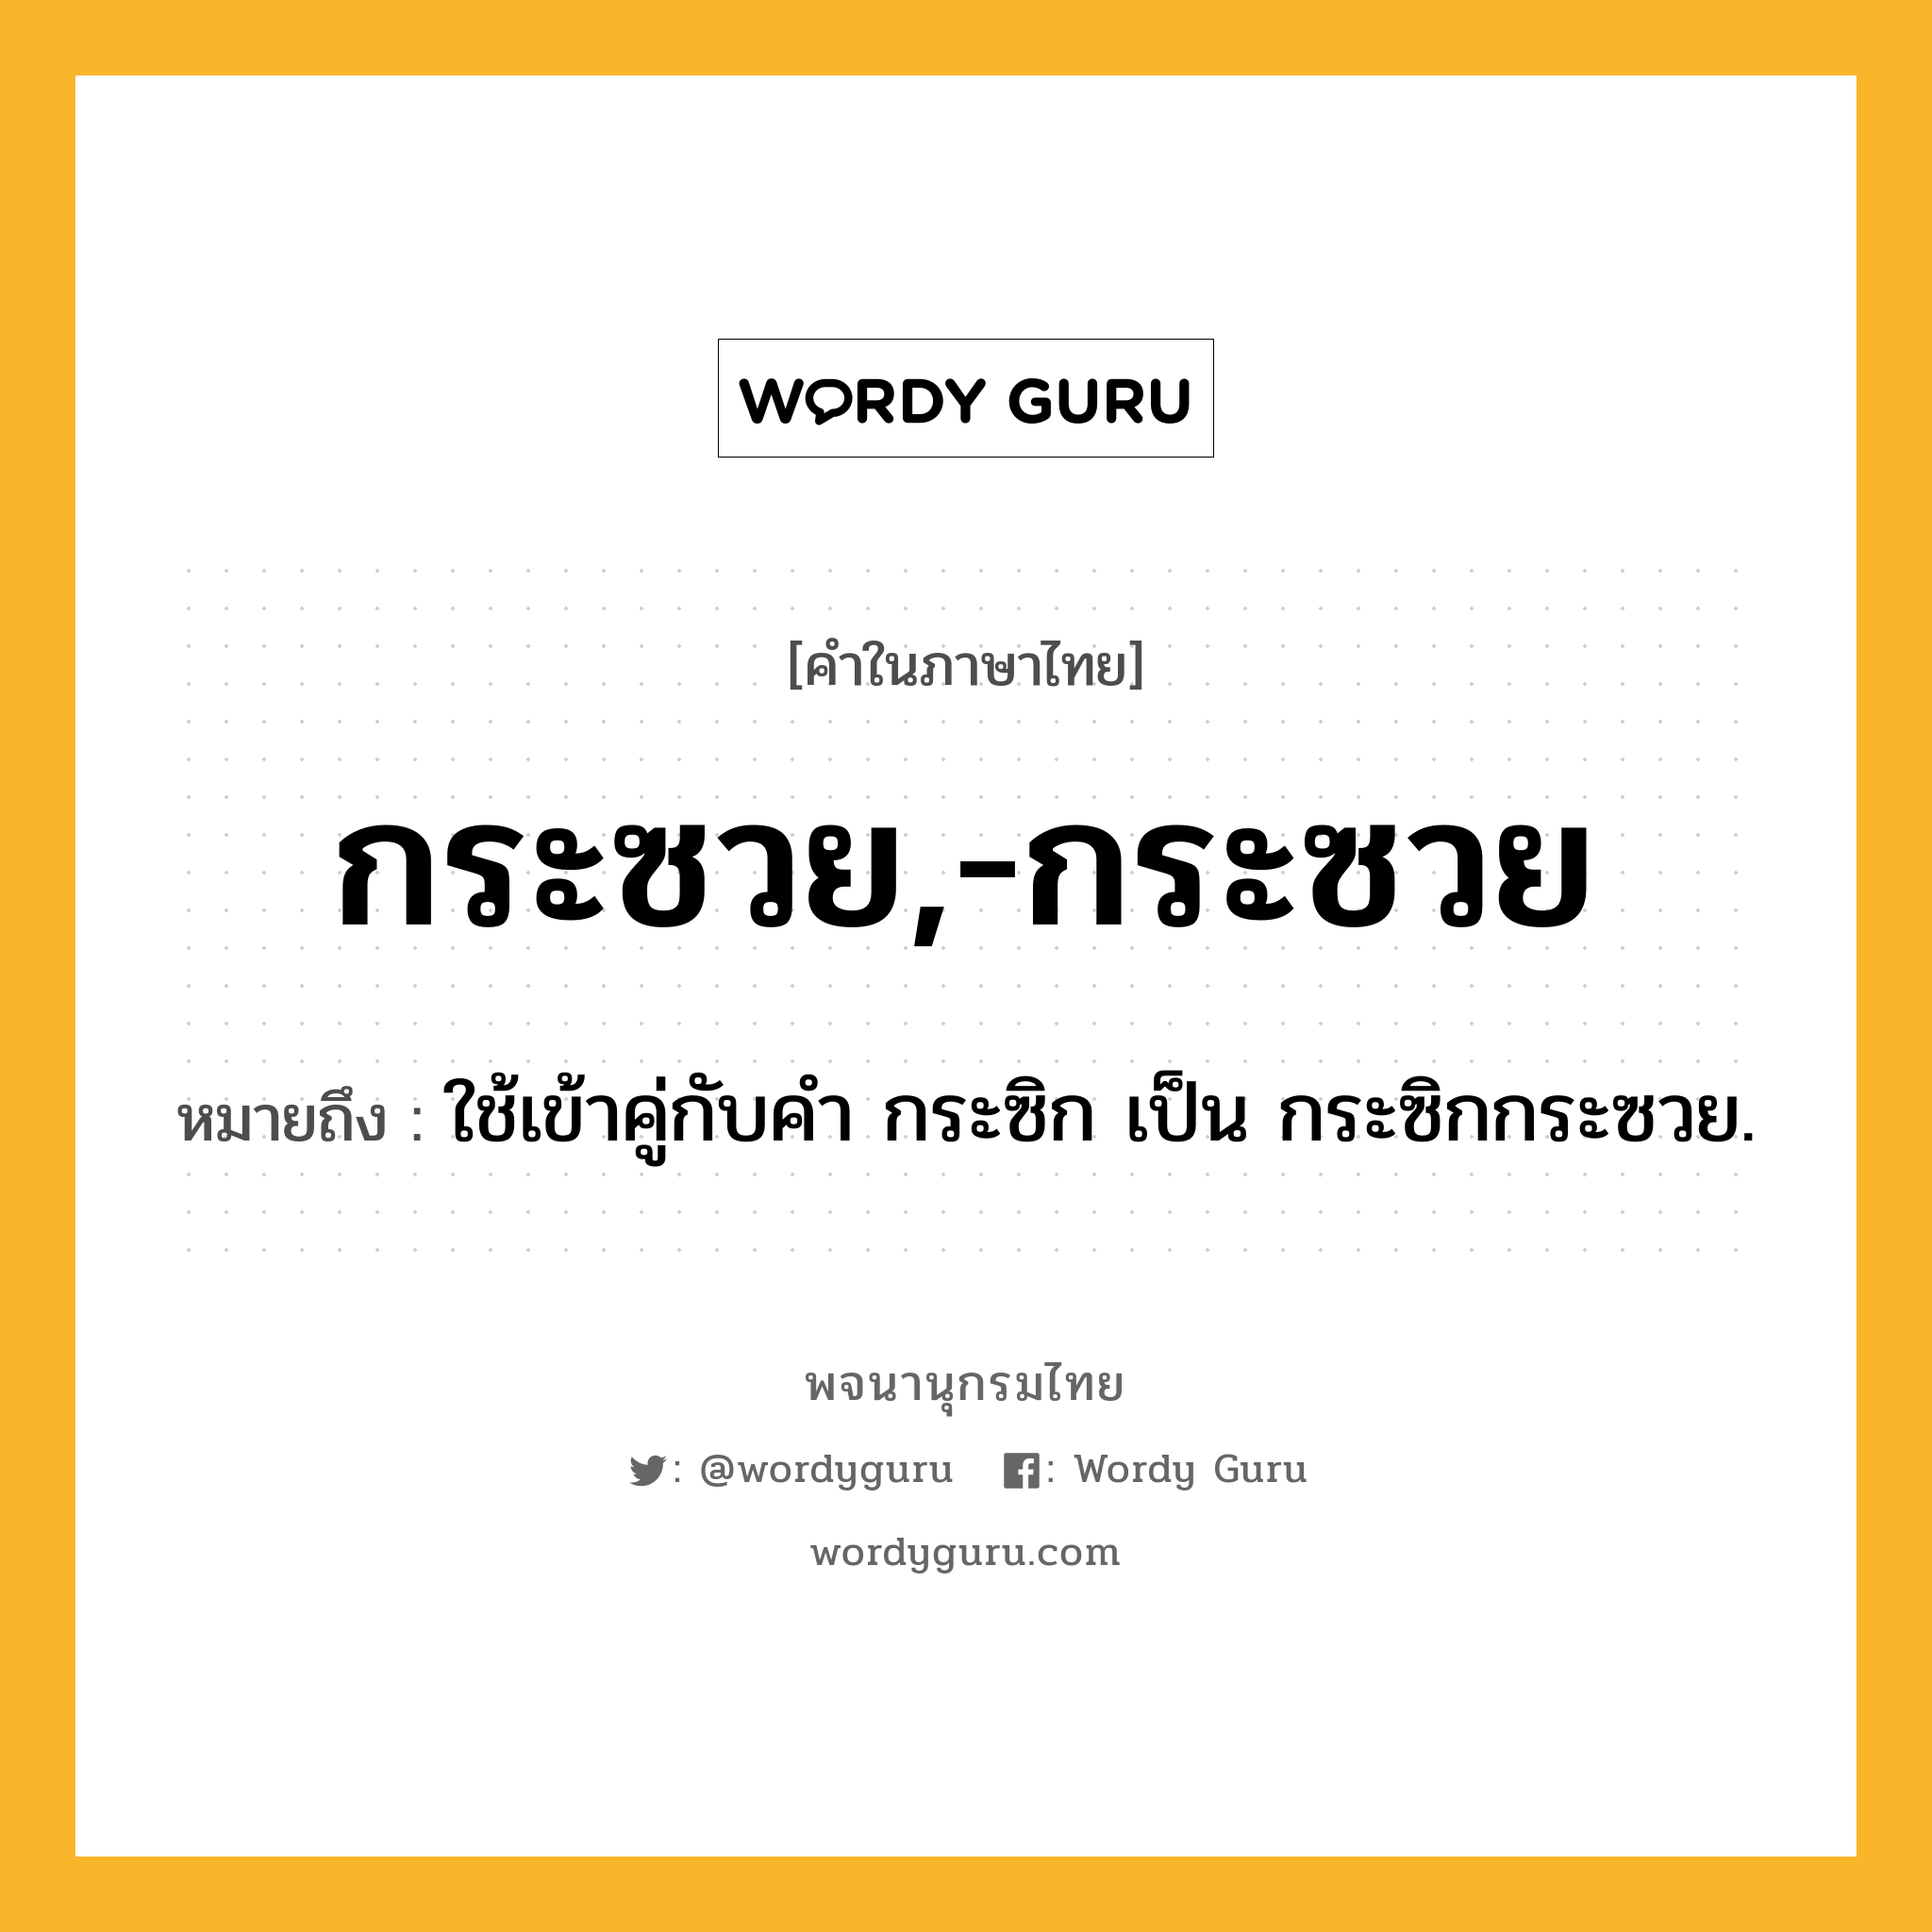 กระซวย,-กระซวย หมายถึงอะไร?, คำในภาษาไทย กระซวย,-กระซวย หมายถึง ใช้เข้าคู่กับคํา กระซิก เป็น กระซิกกระซวย.